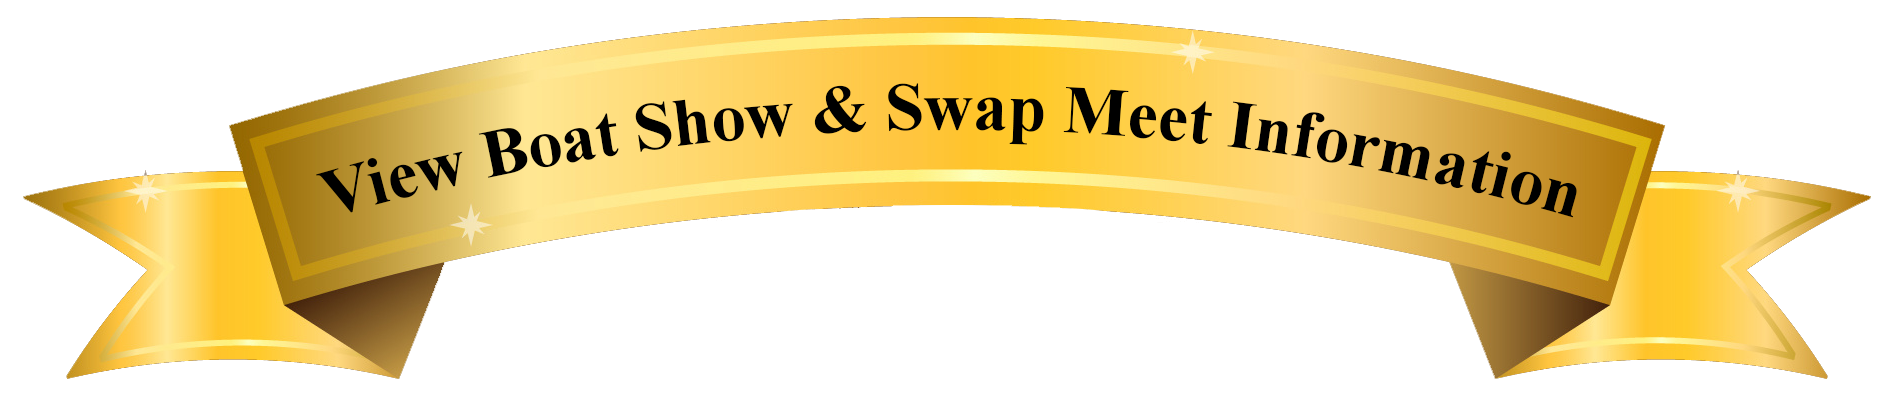 Boat Show & Swap Meet